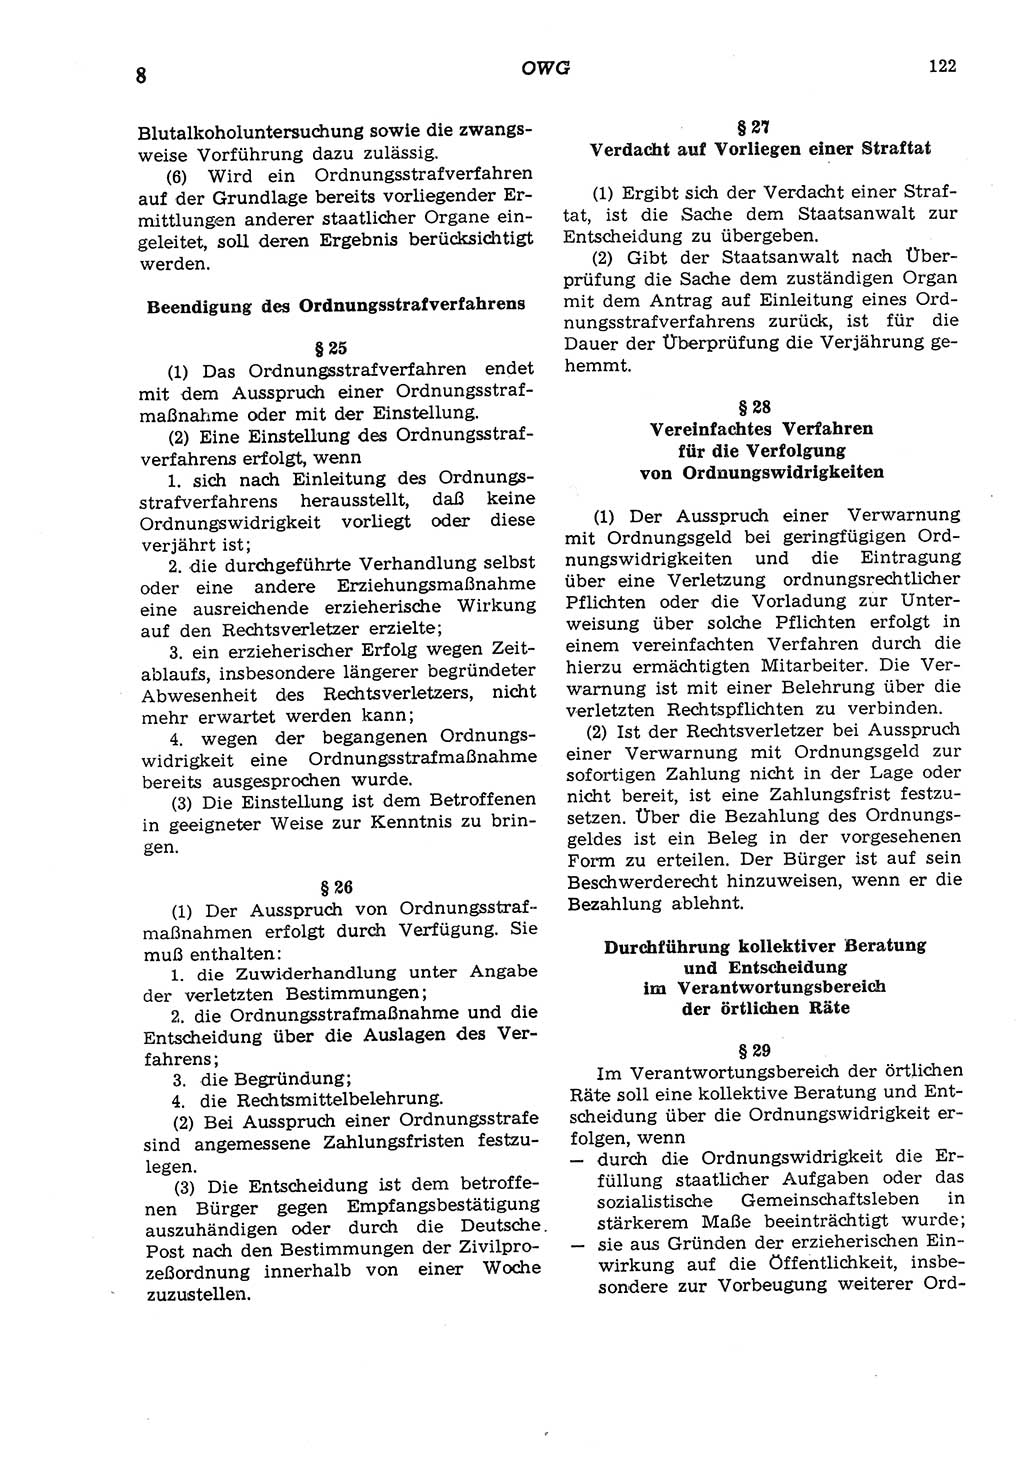 Strafgesetzbuch (StGB) der Deutschen Demokratischen Republik (DDR) und angrenzende Gesetze und Bestimmungen 1975, Seite 122 (StGB DDR Ges. Best. 1975, S. 122)